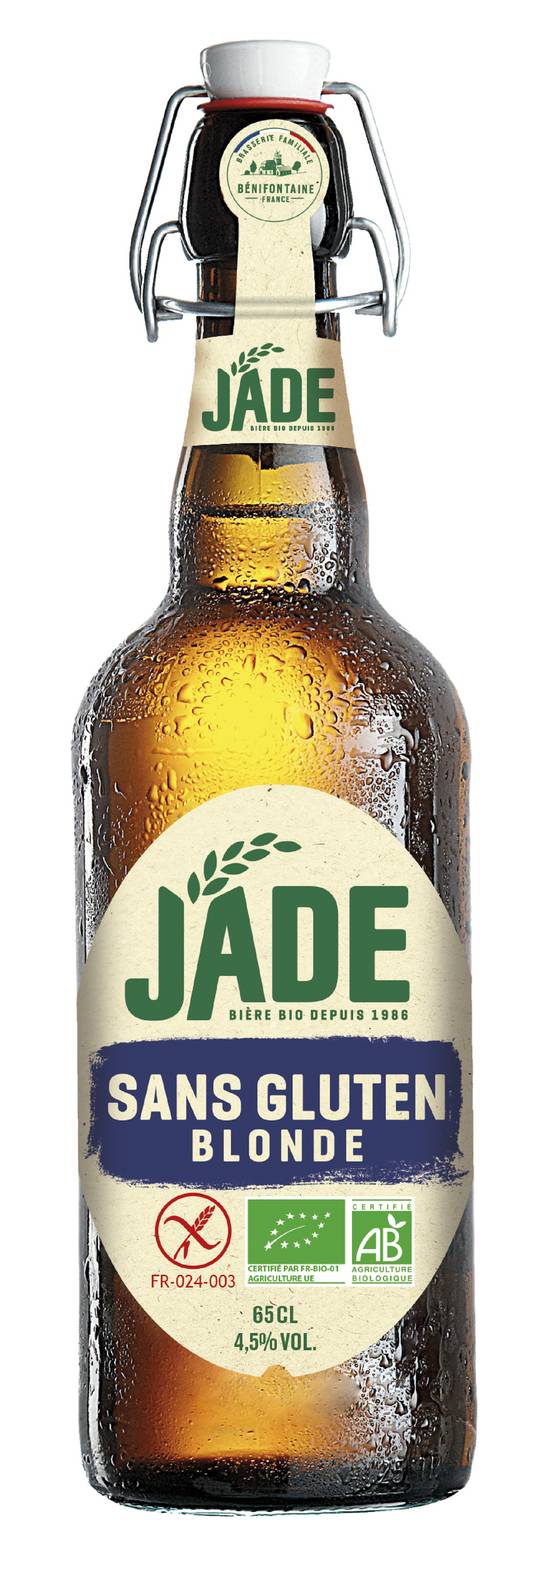 Jade - Bière bio (650 ml)